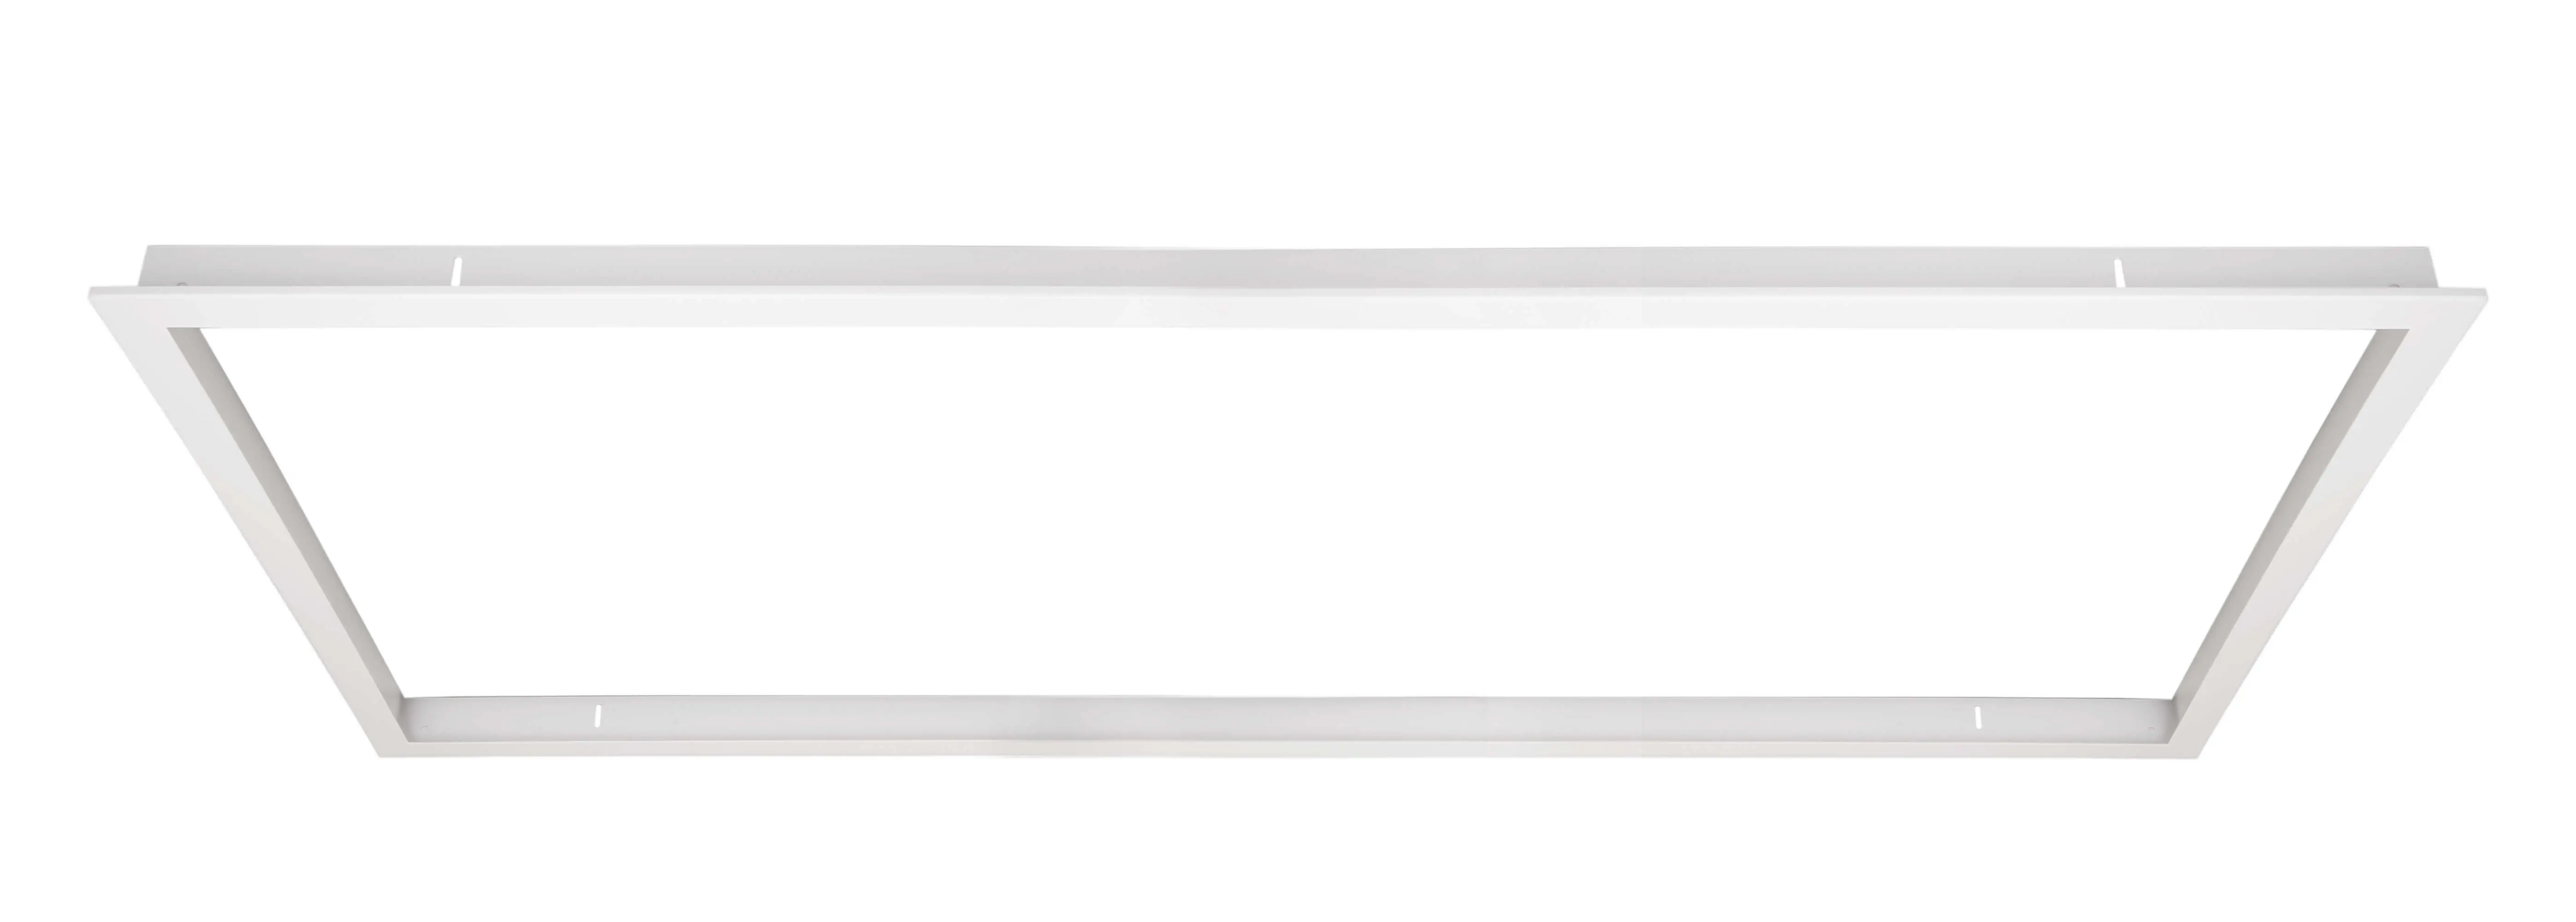 Einbaurahmen weiß für LED-Panels 119.5x59.5cm